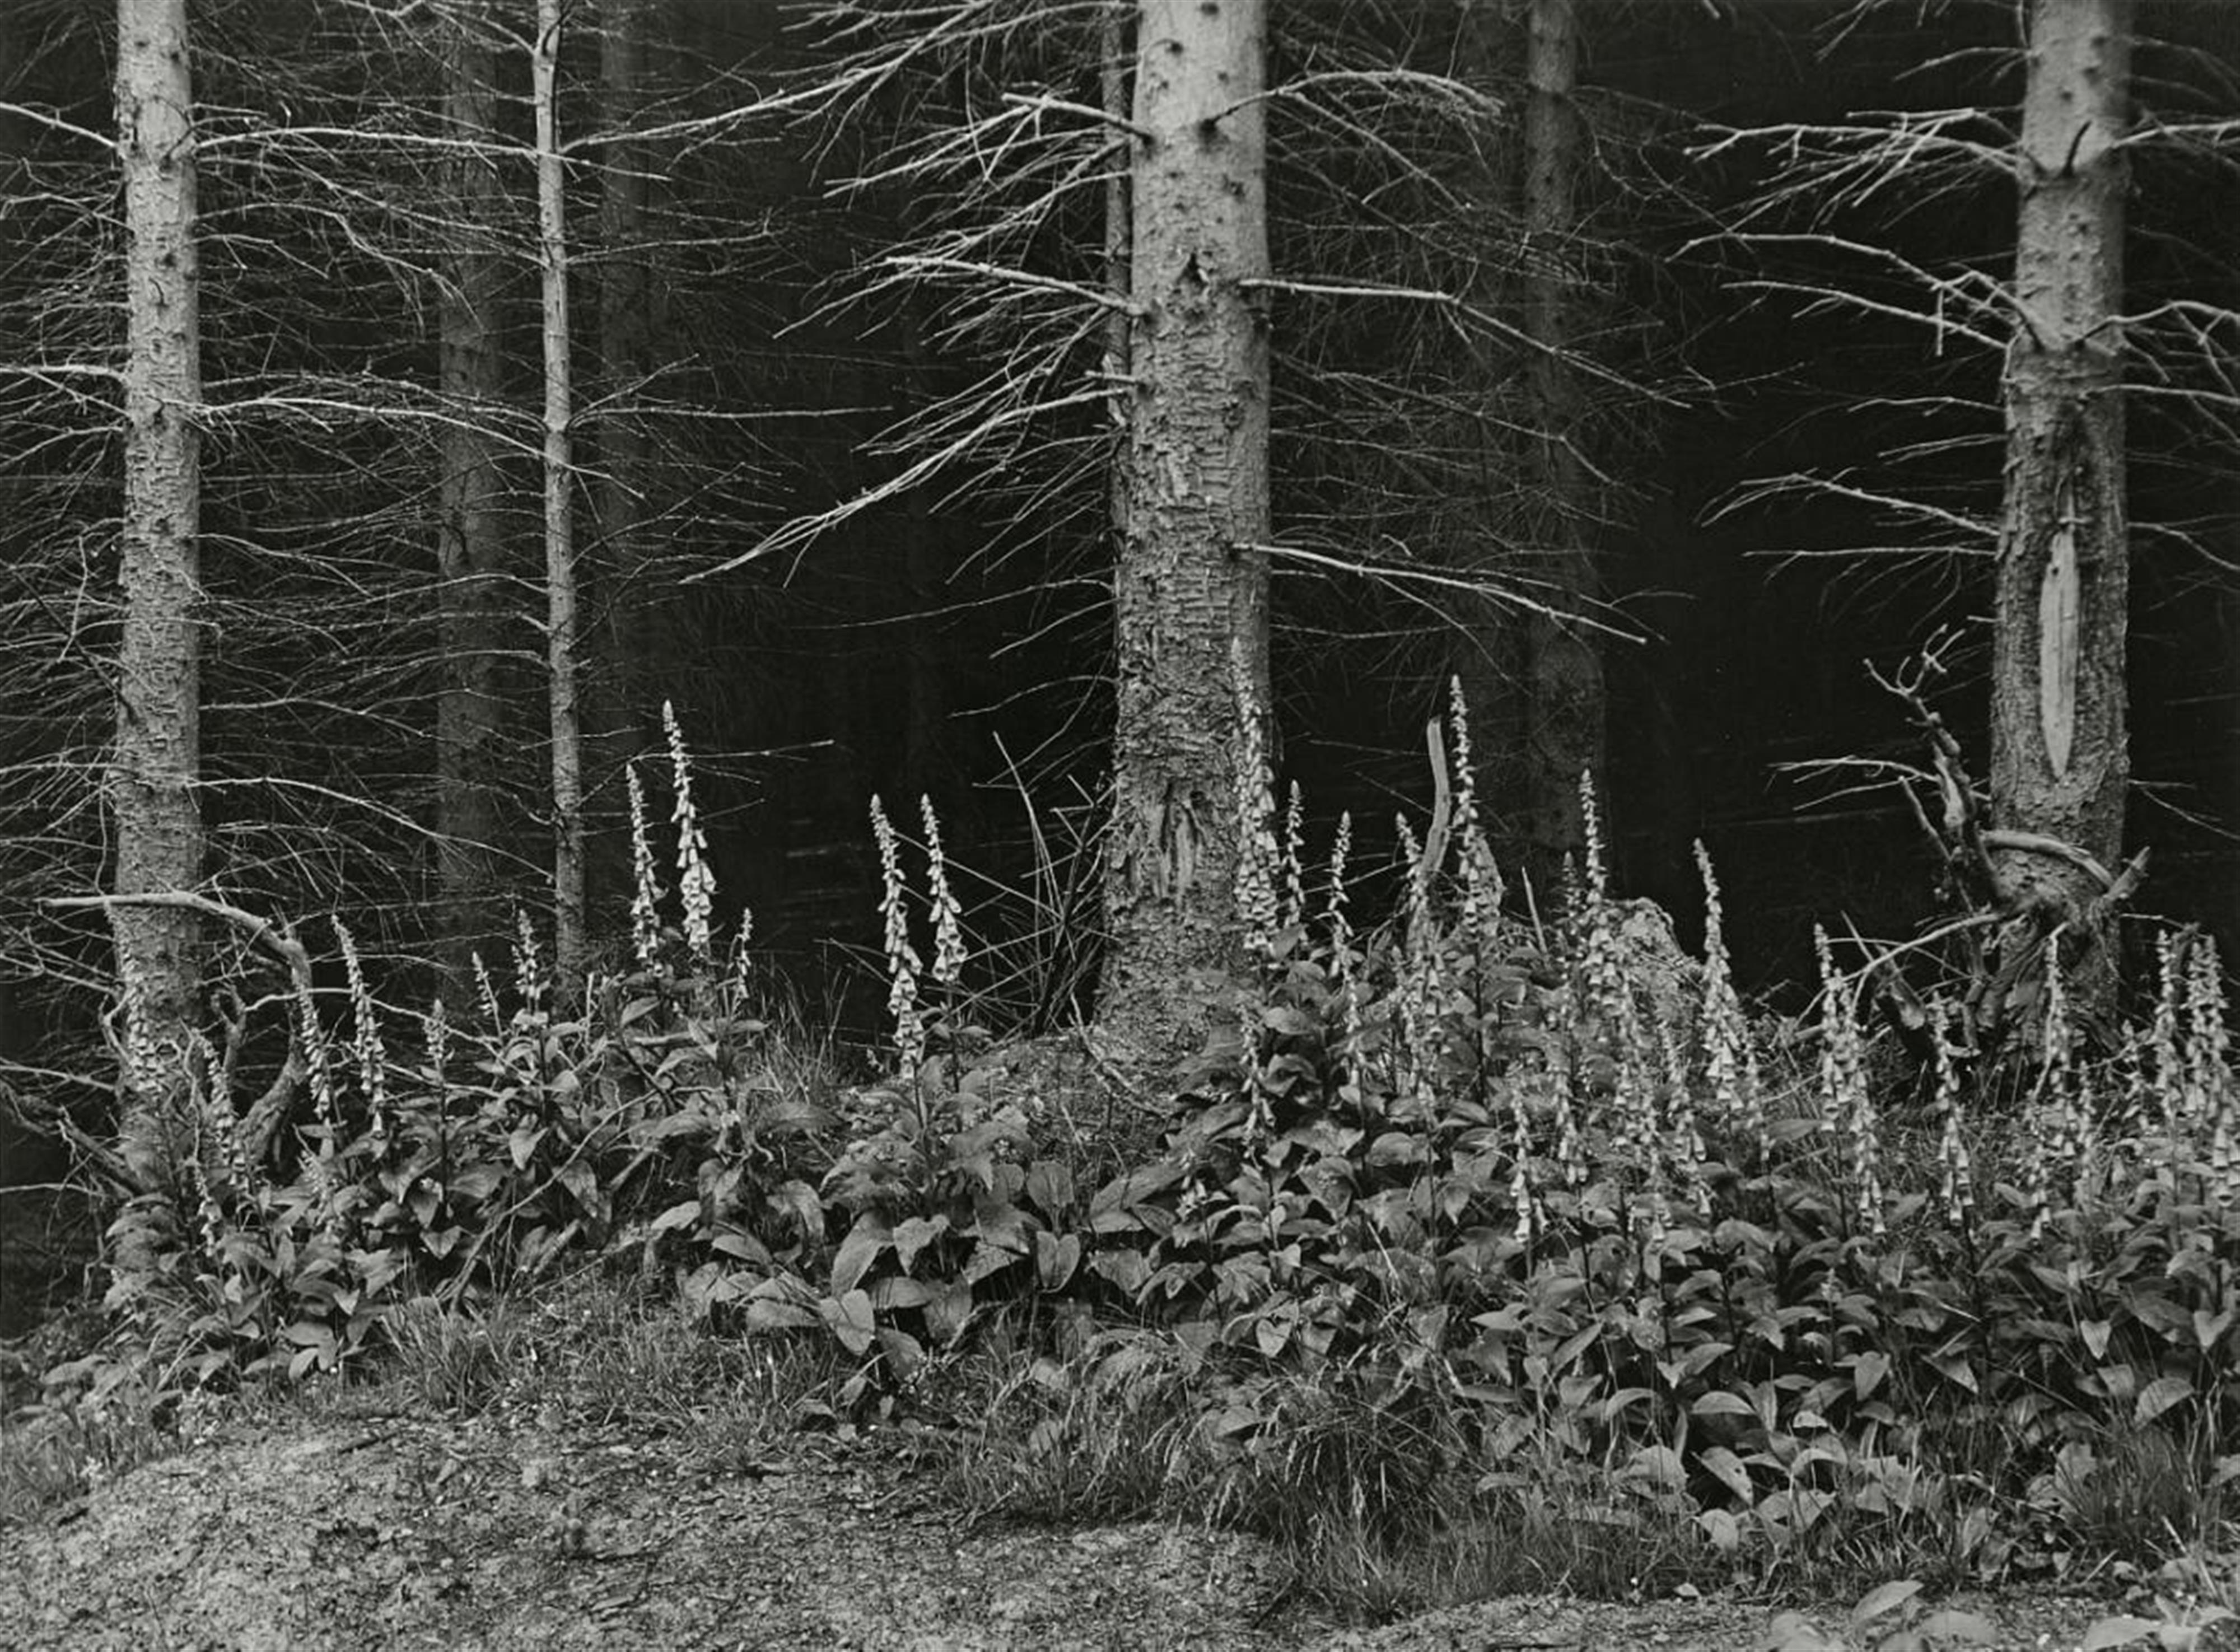 Albert Renger-Patzsch - Fingerhut am Waldrand (Foxglove at the edge of the woods) - image-1